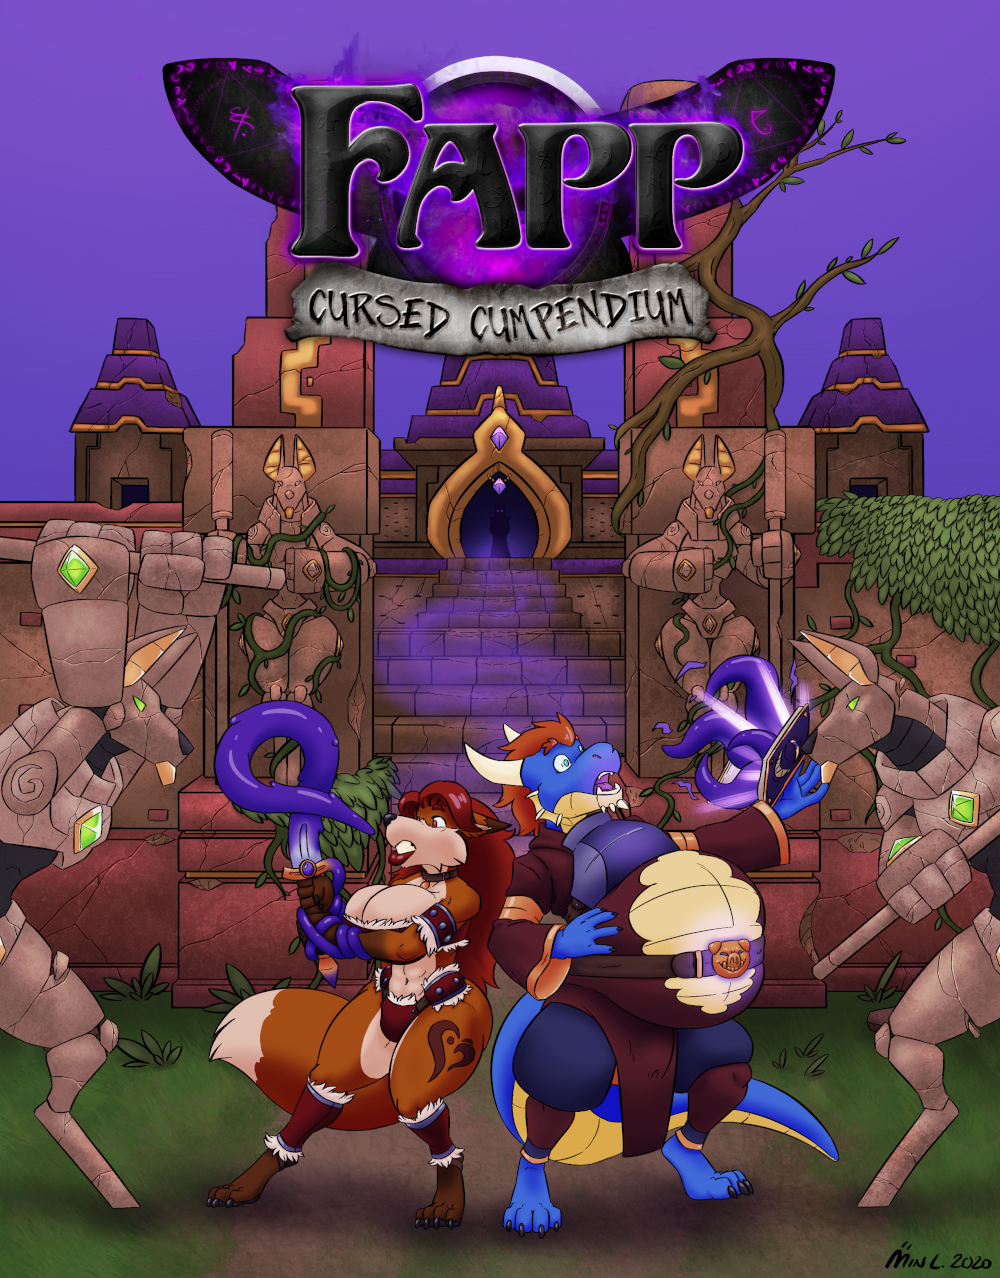 Fapp: Cursed Cumpendium is Coming Soon!